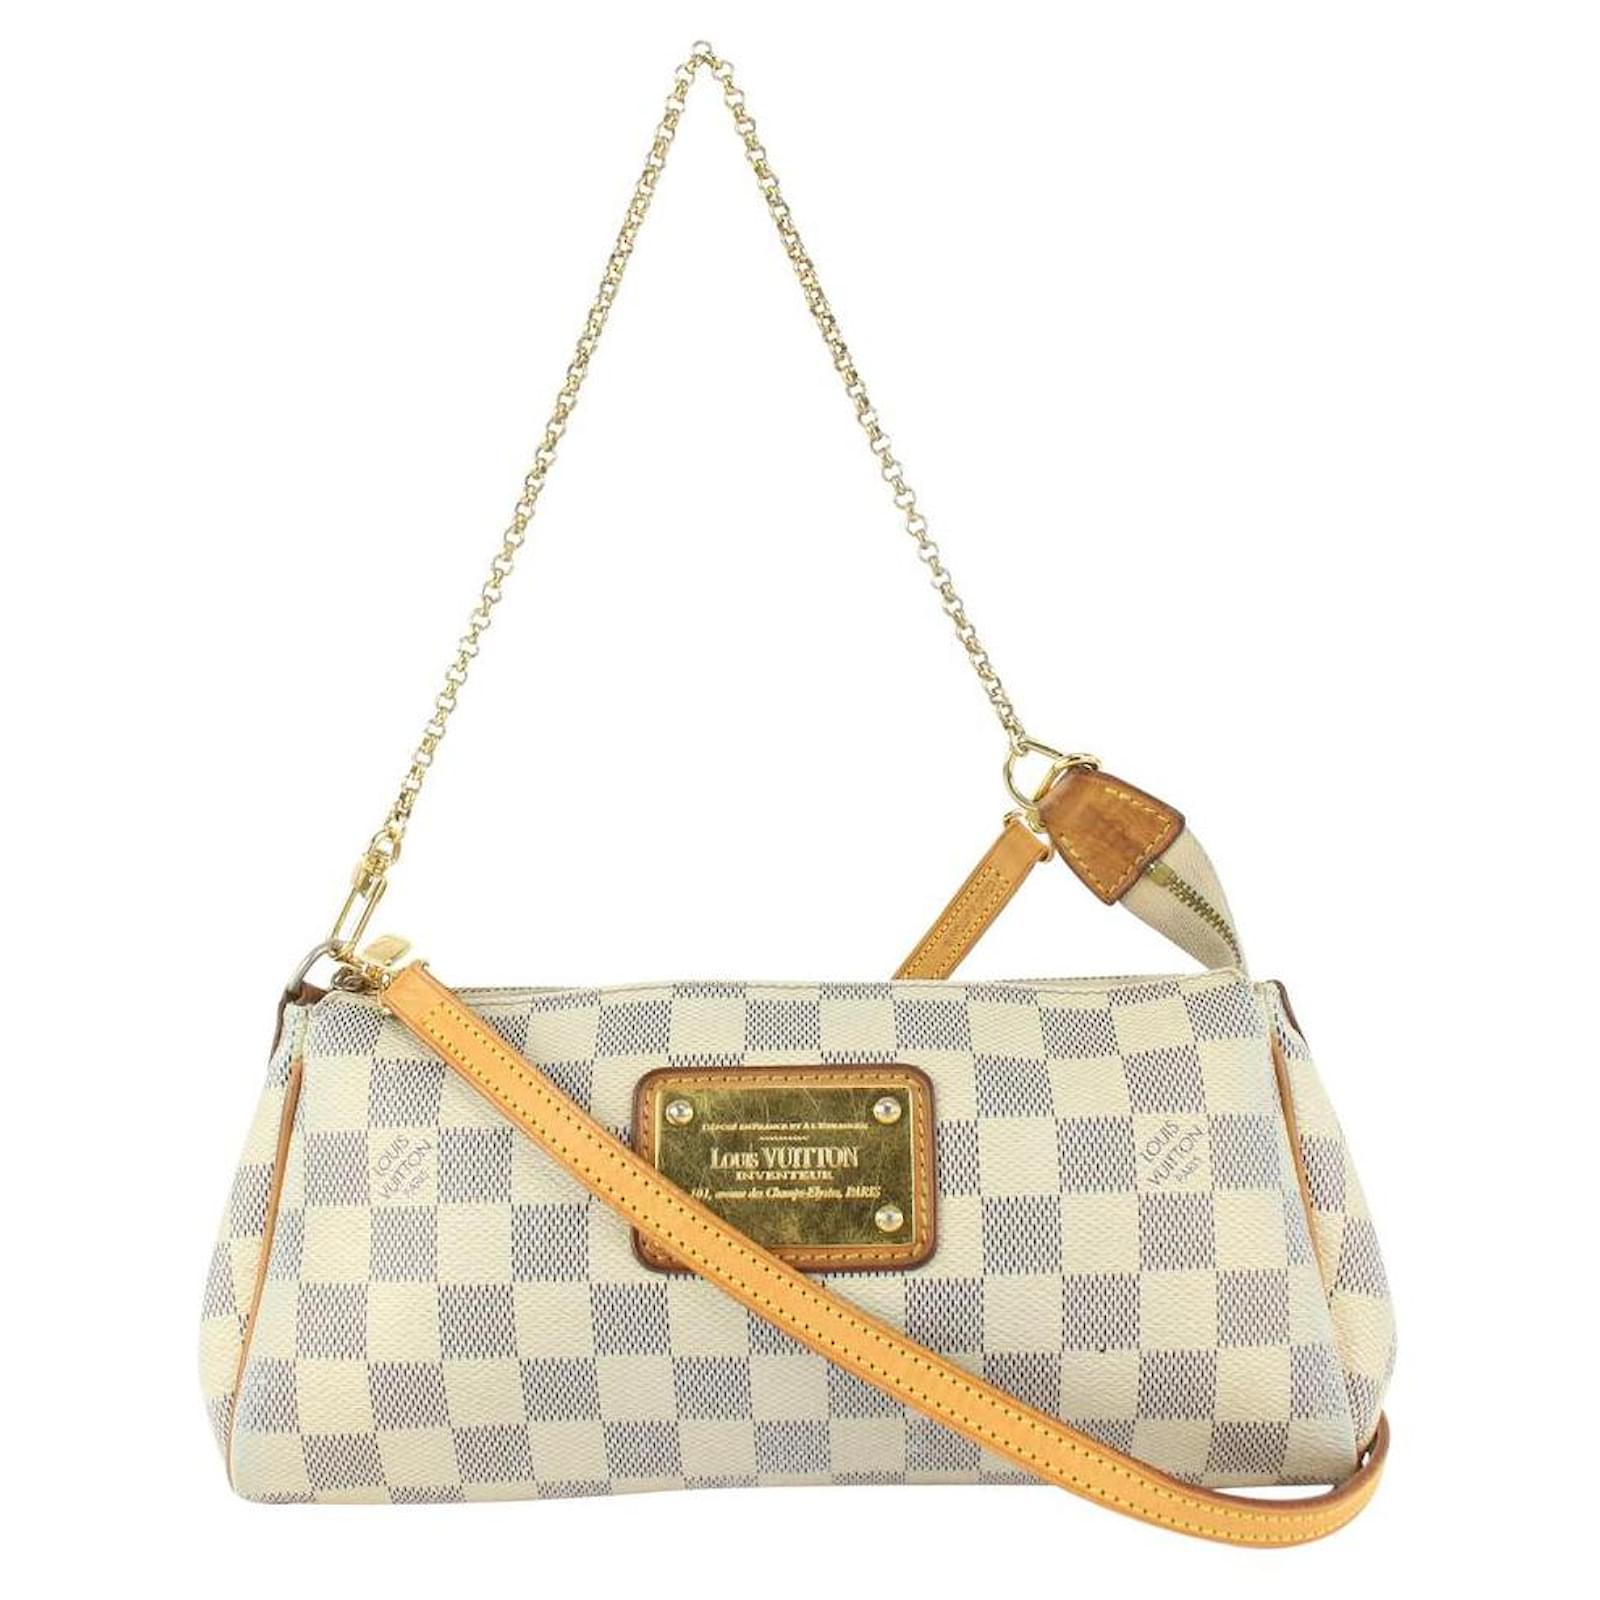 Eva leather handbag Louis Vuitton White in Leather - 35370226